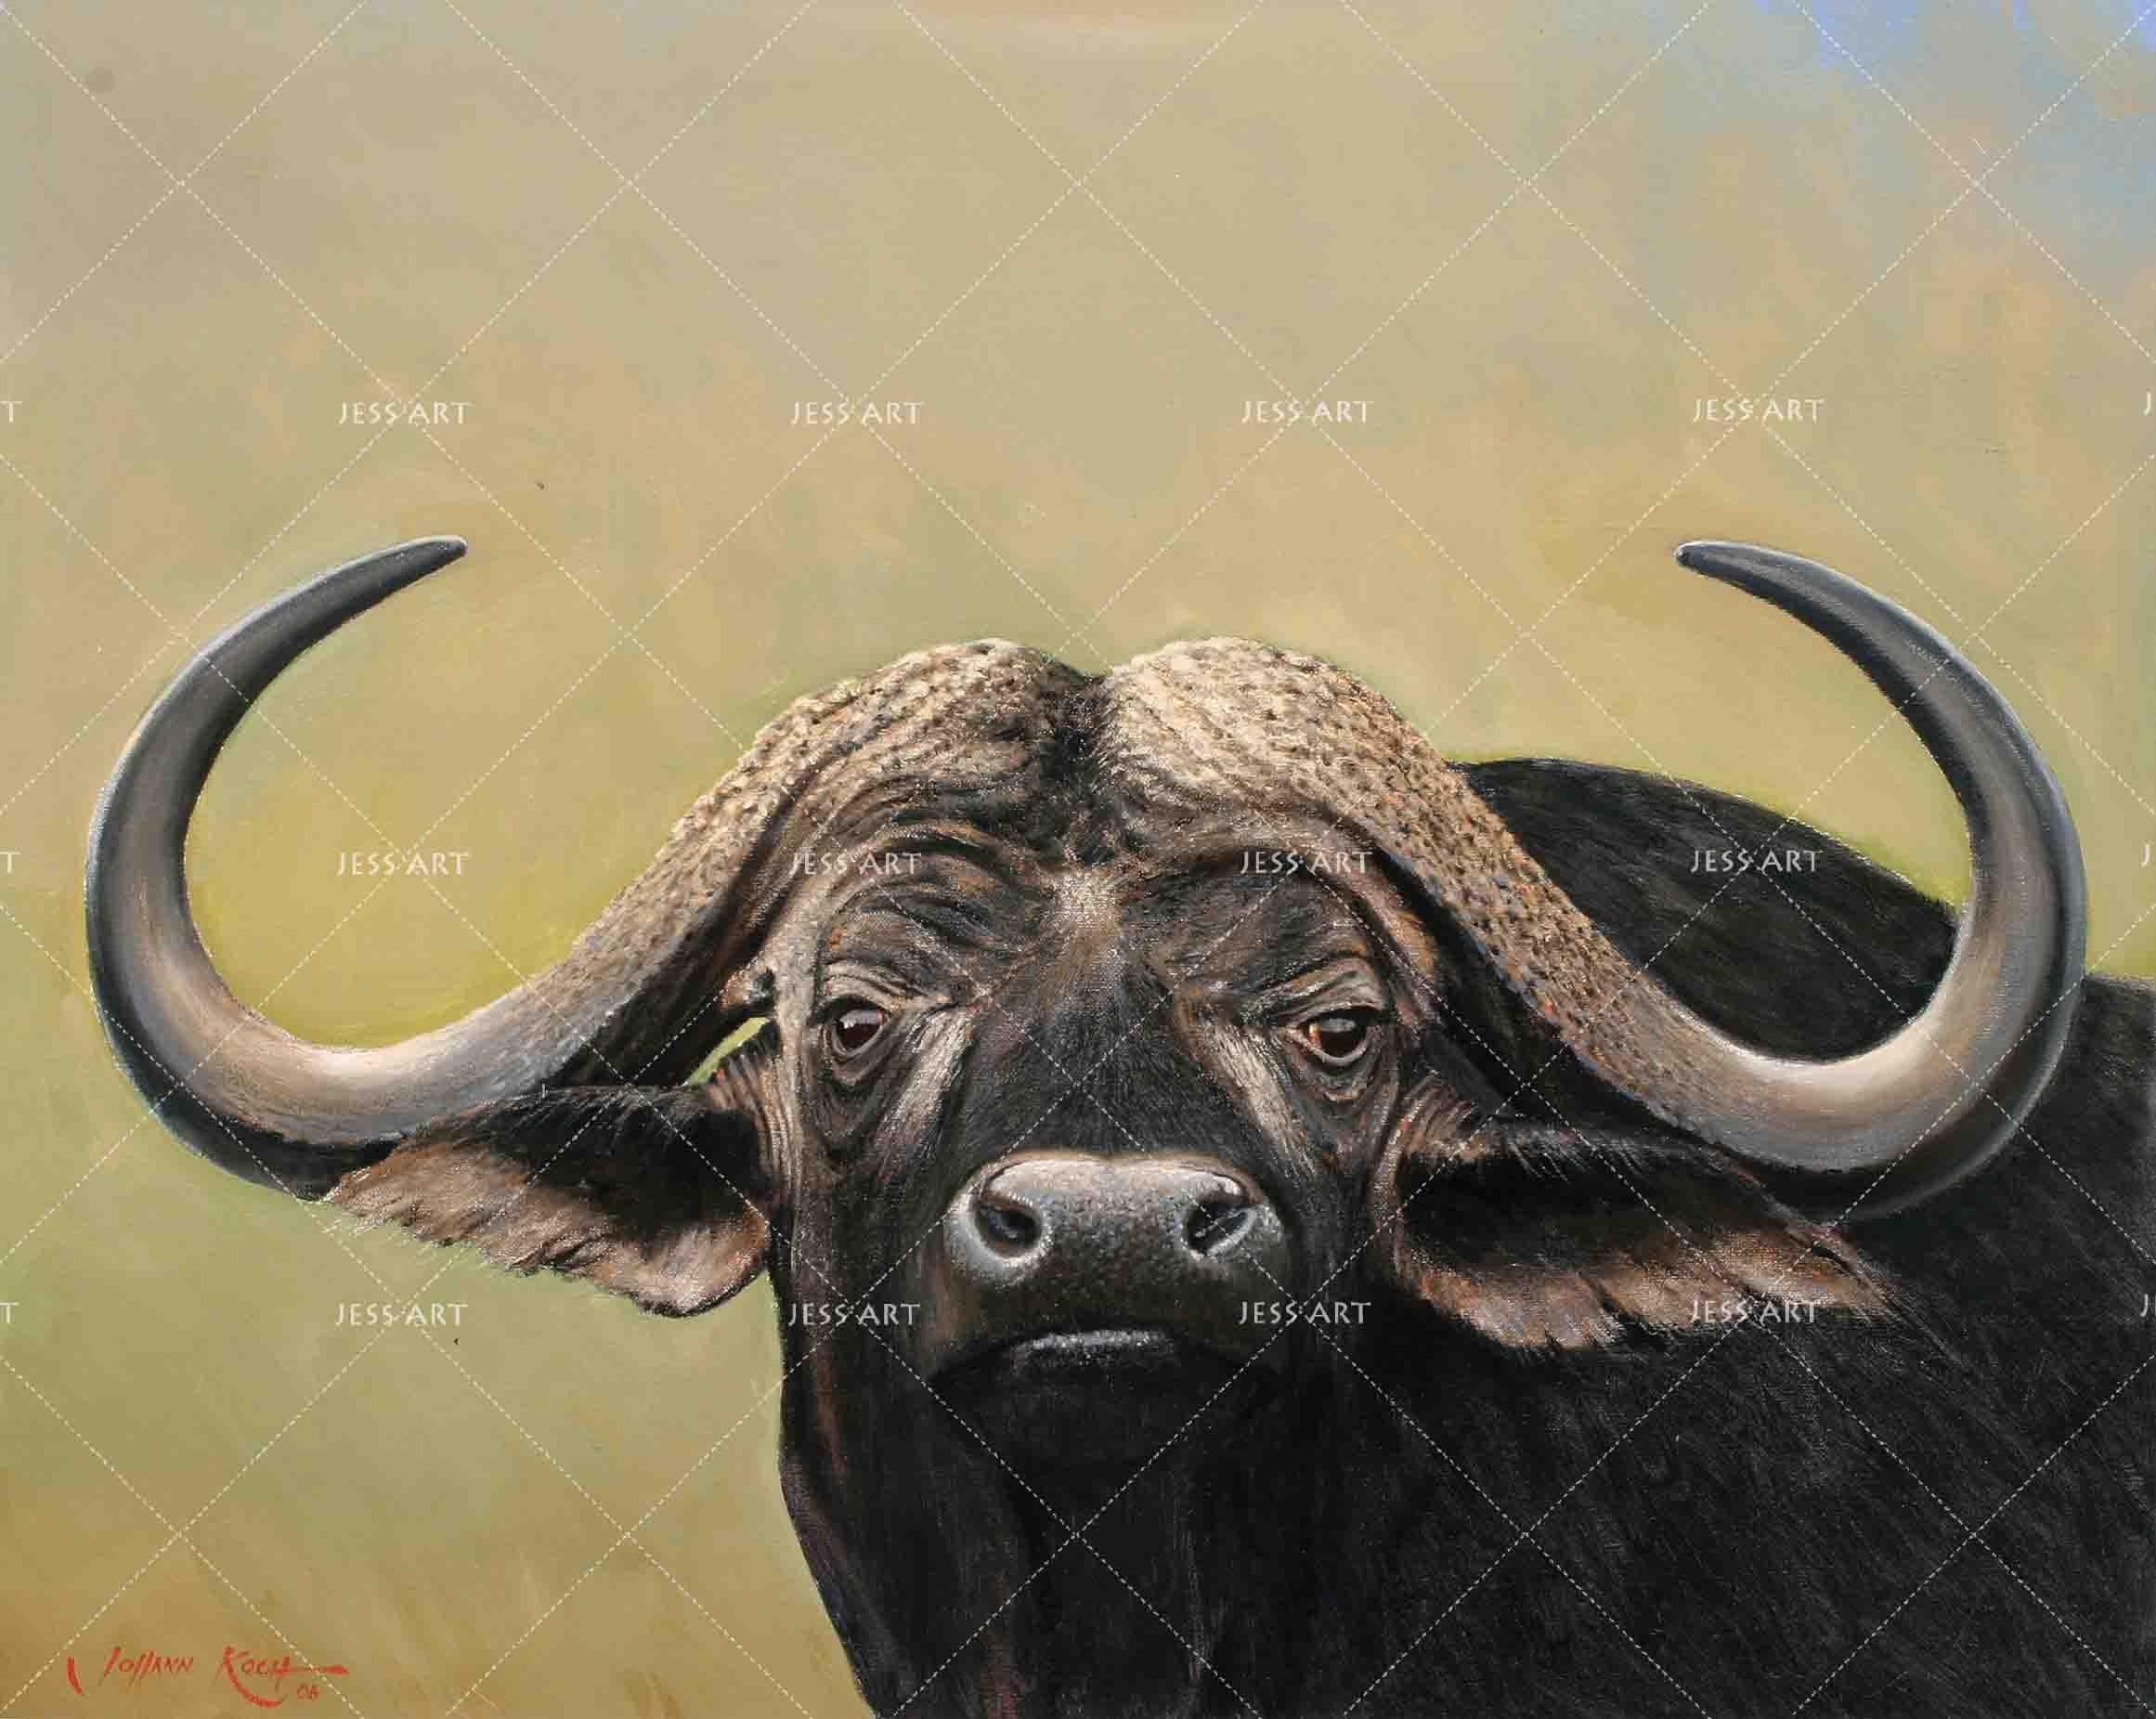 3D Buffalo Head Close-up Wall Mural Wallpaper 22- Jess Art Decoration